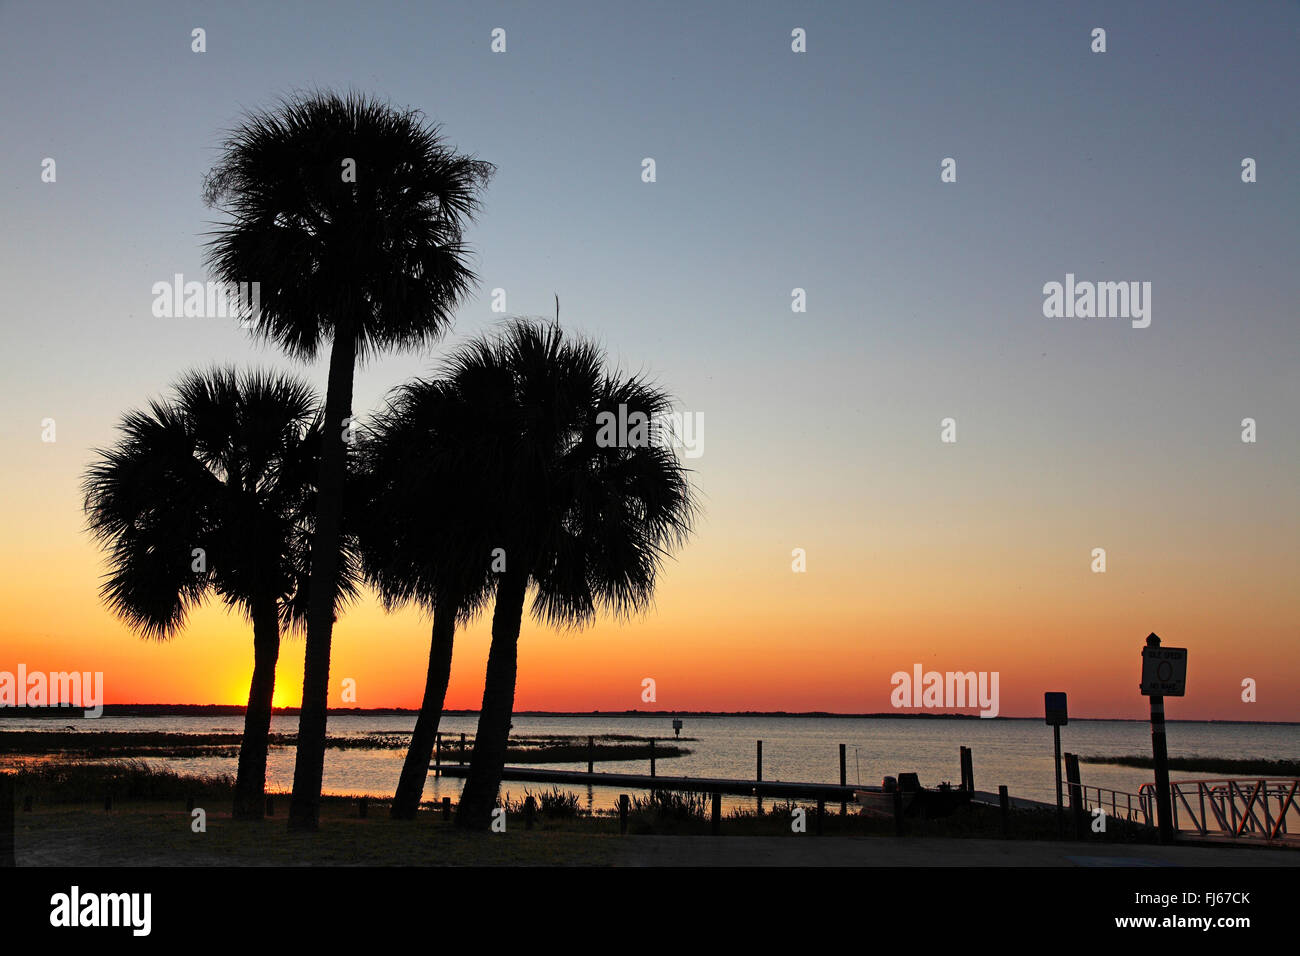 palm trees at Lake Kissimmee at sunset, USA, Florida Stock Photo